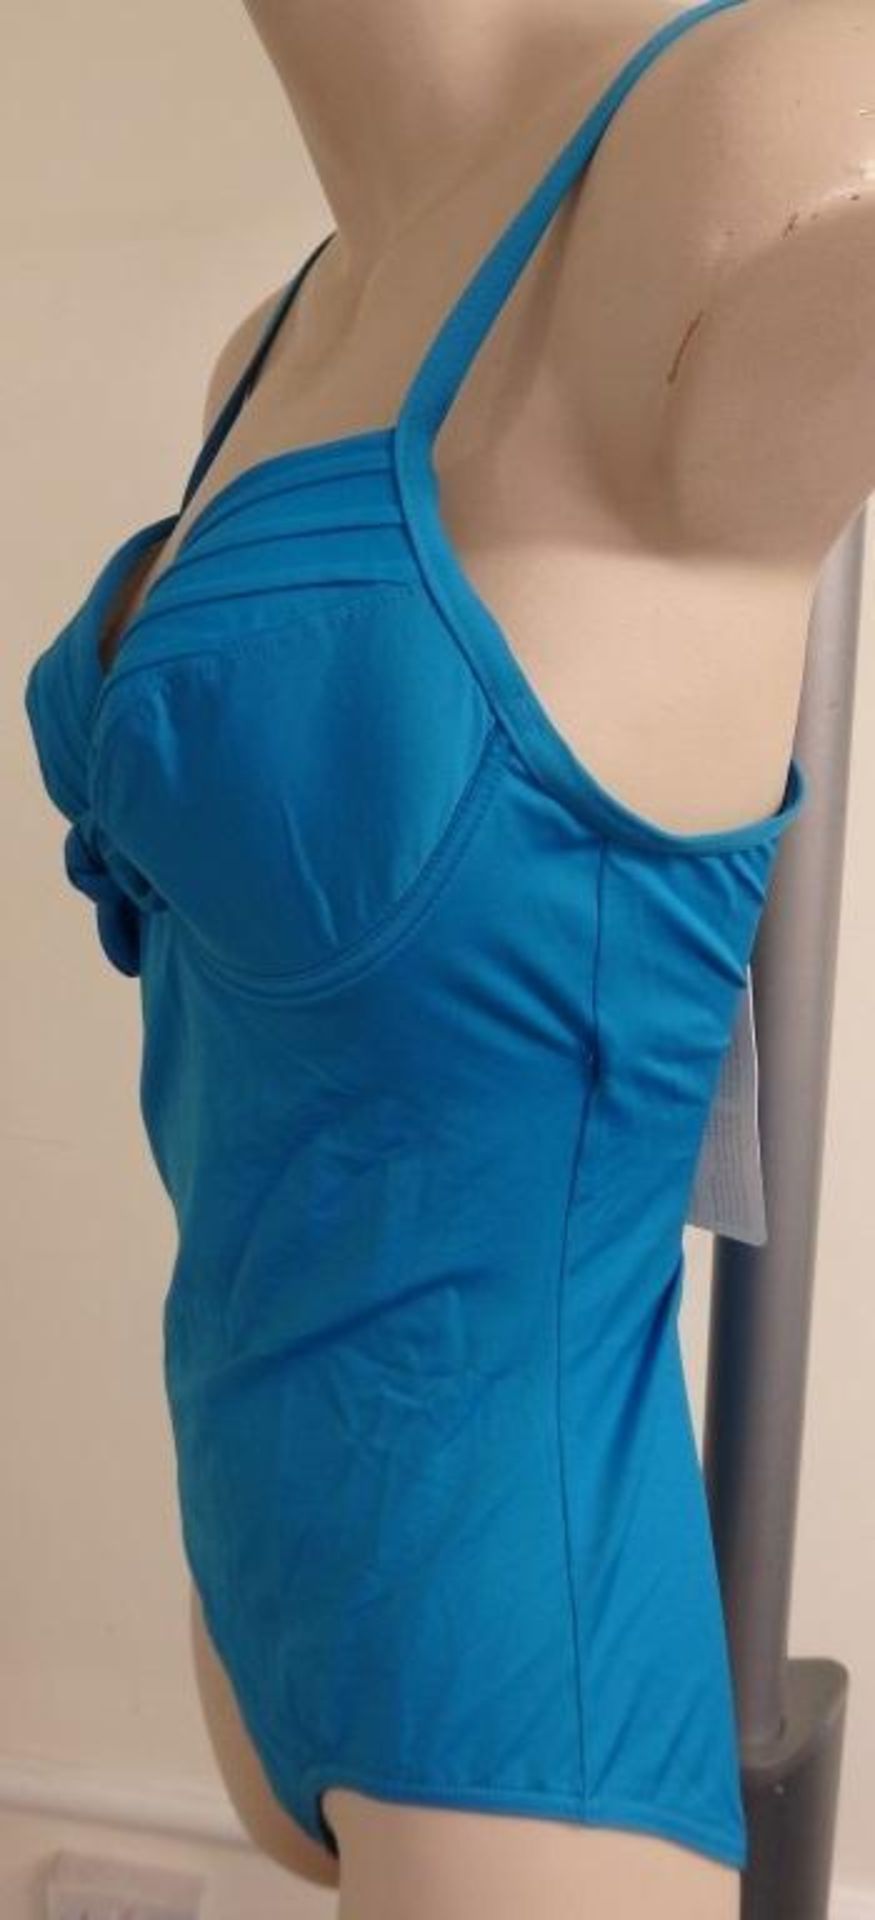 1 x Rasurel - Turquoise -Touquet balconnet Swimsuit - R20232 - Size 2C - UK 32 - Fr 85 - EU/Int 70 - Image 4 of 9